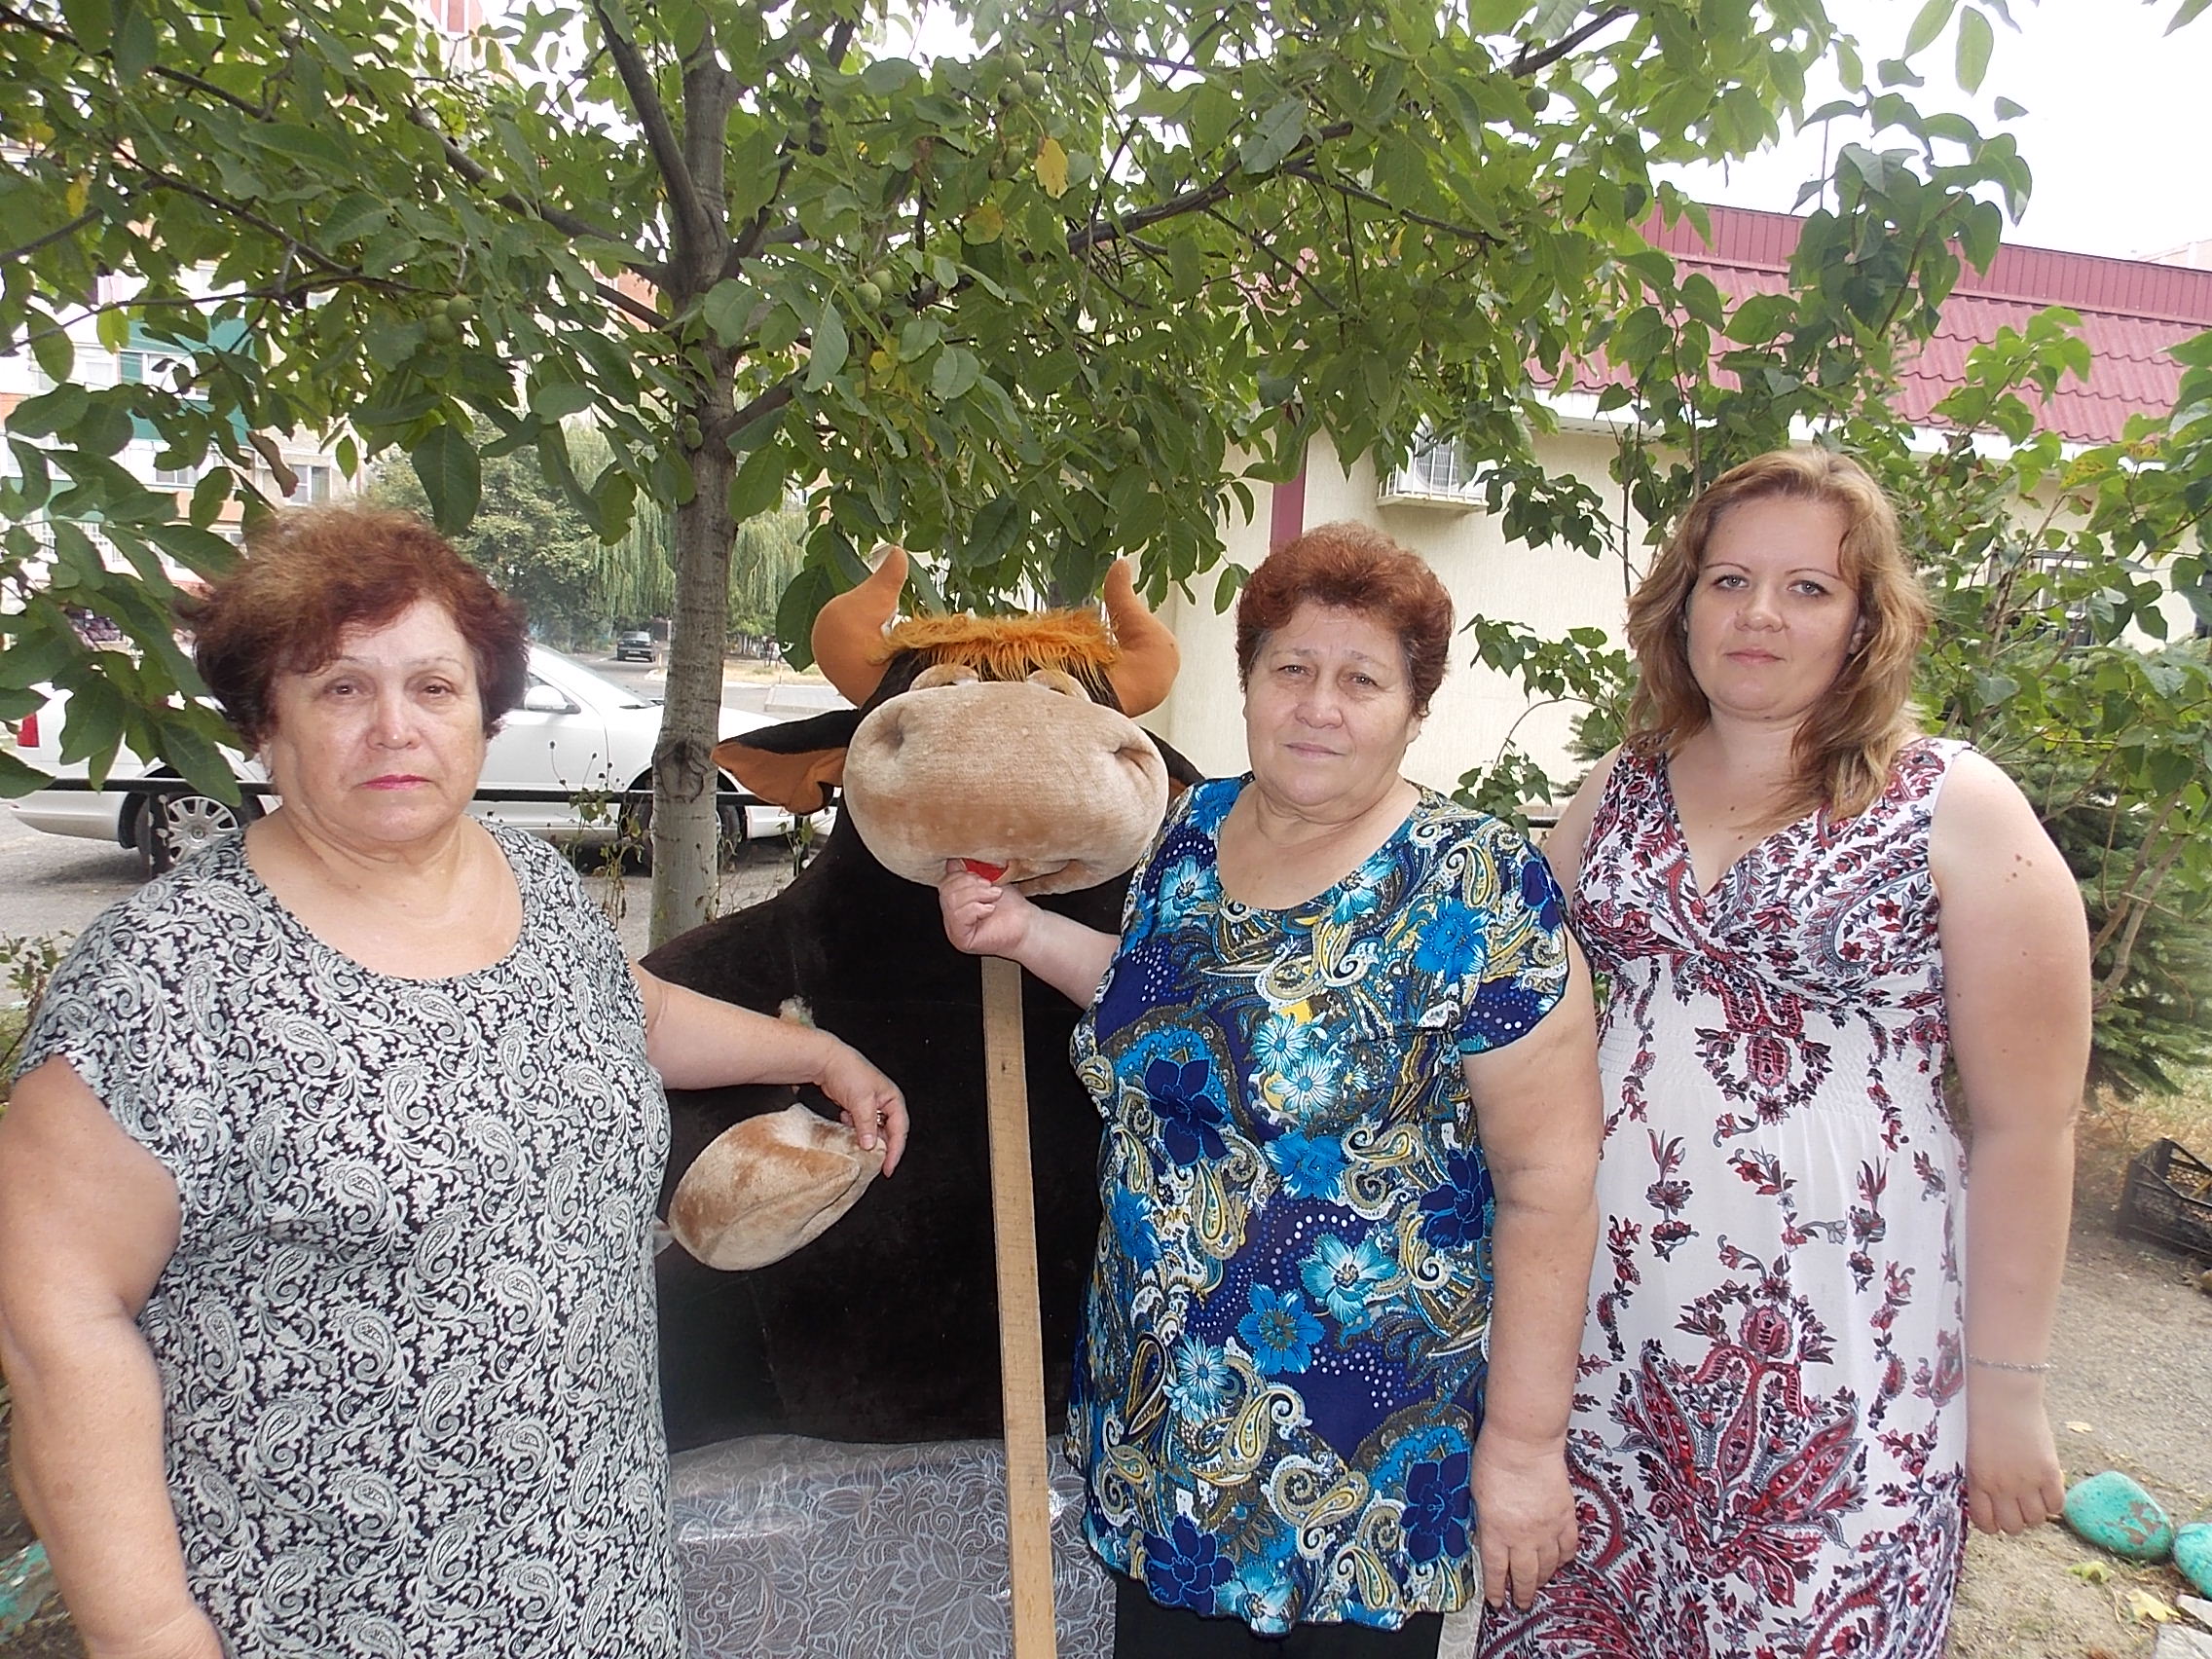 На снимке: актив ТСЖ рядом с талисманом двора «Петровичем». Олеся Чернецкая — последняя справа.